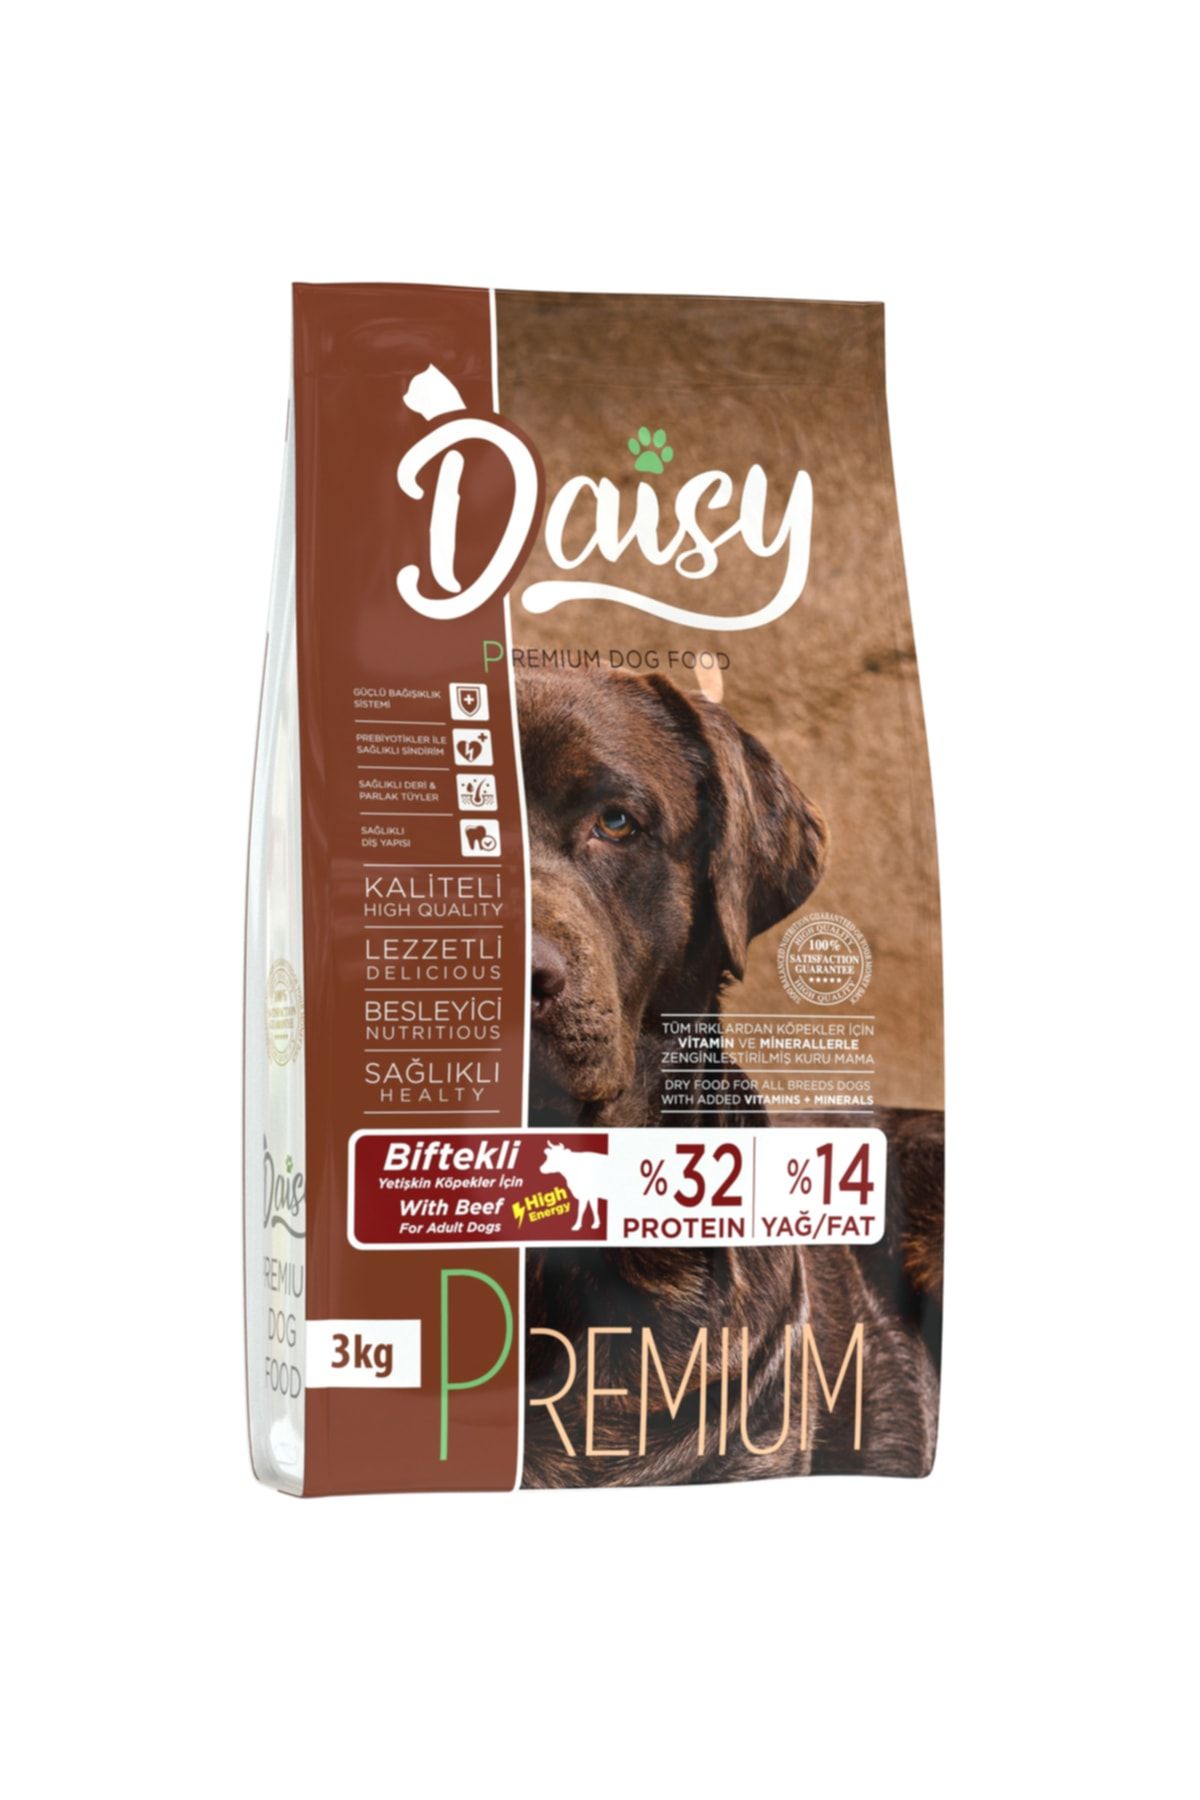 Daisy Premium Biftekli High Energy Yetişkin Köpek Maması 3 kg